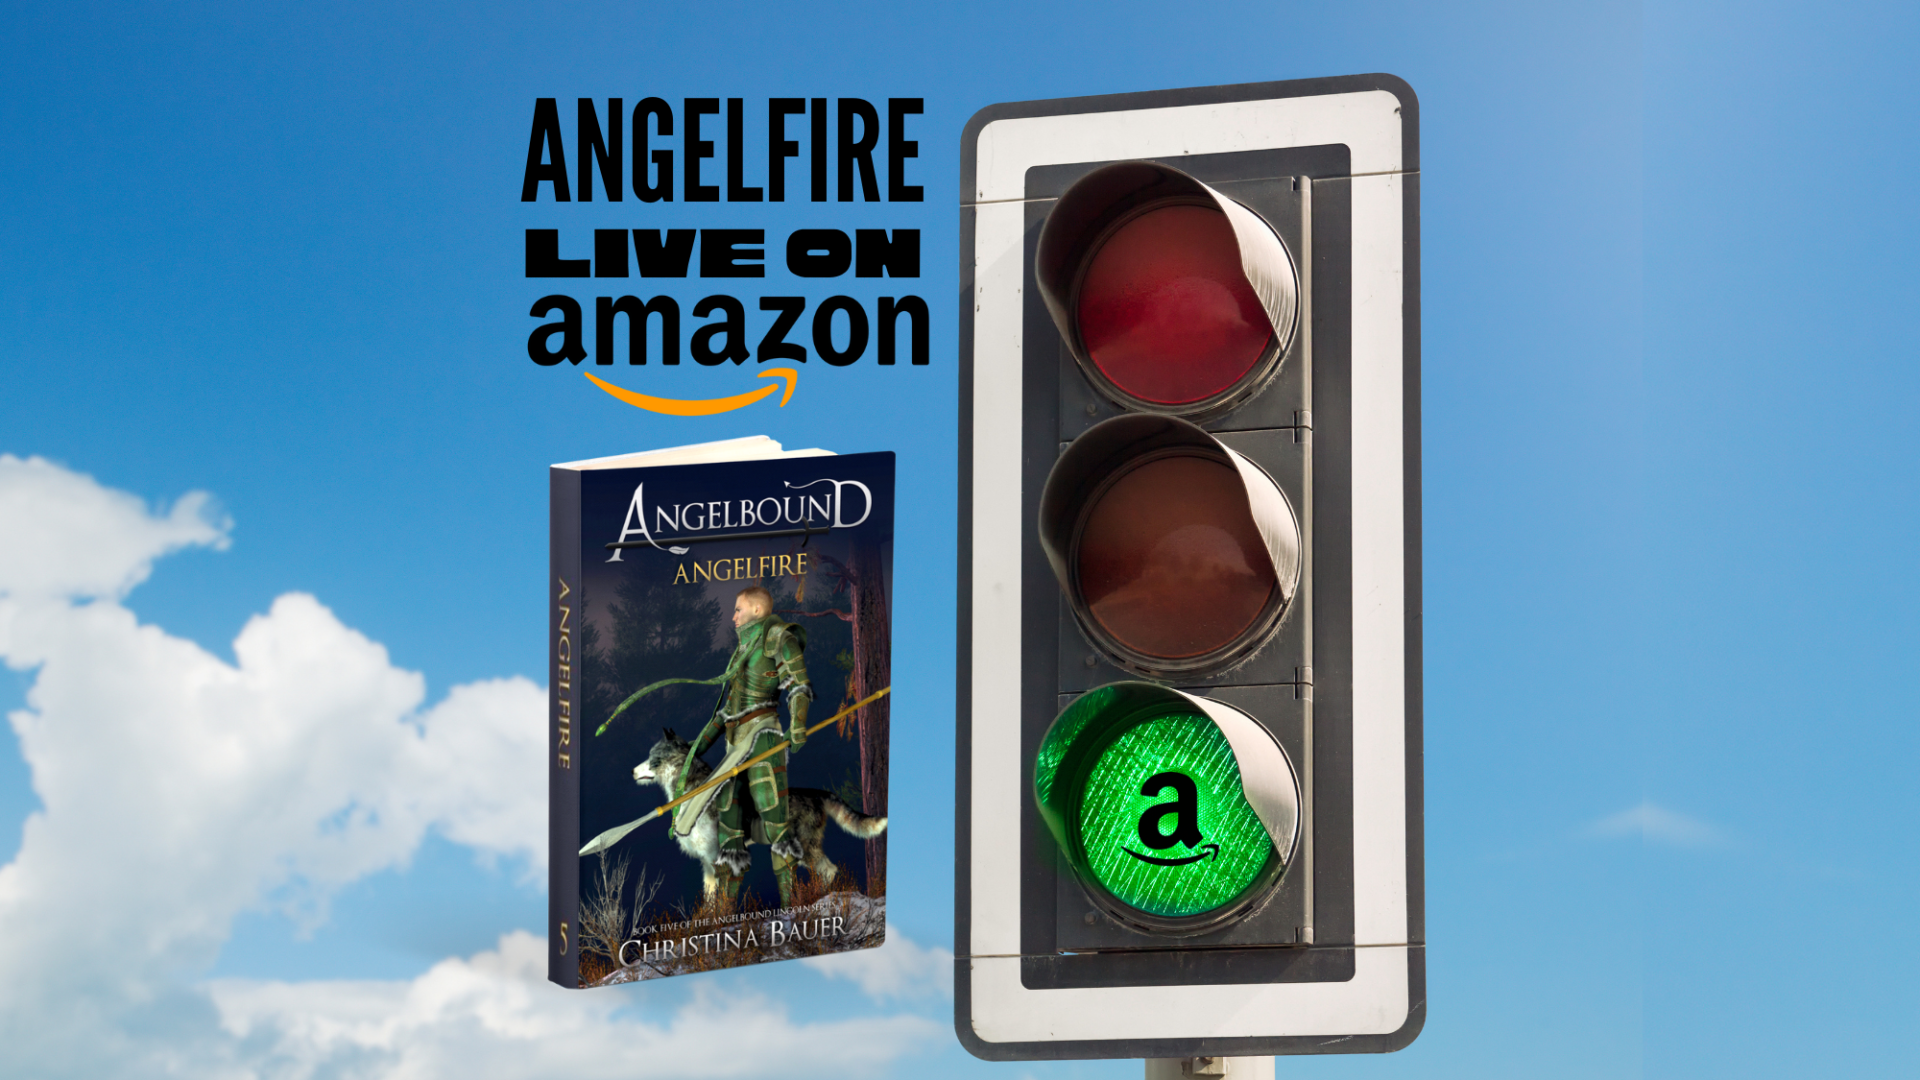 ANGELFIRE on Amazon!